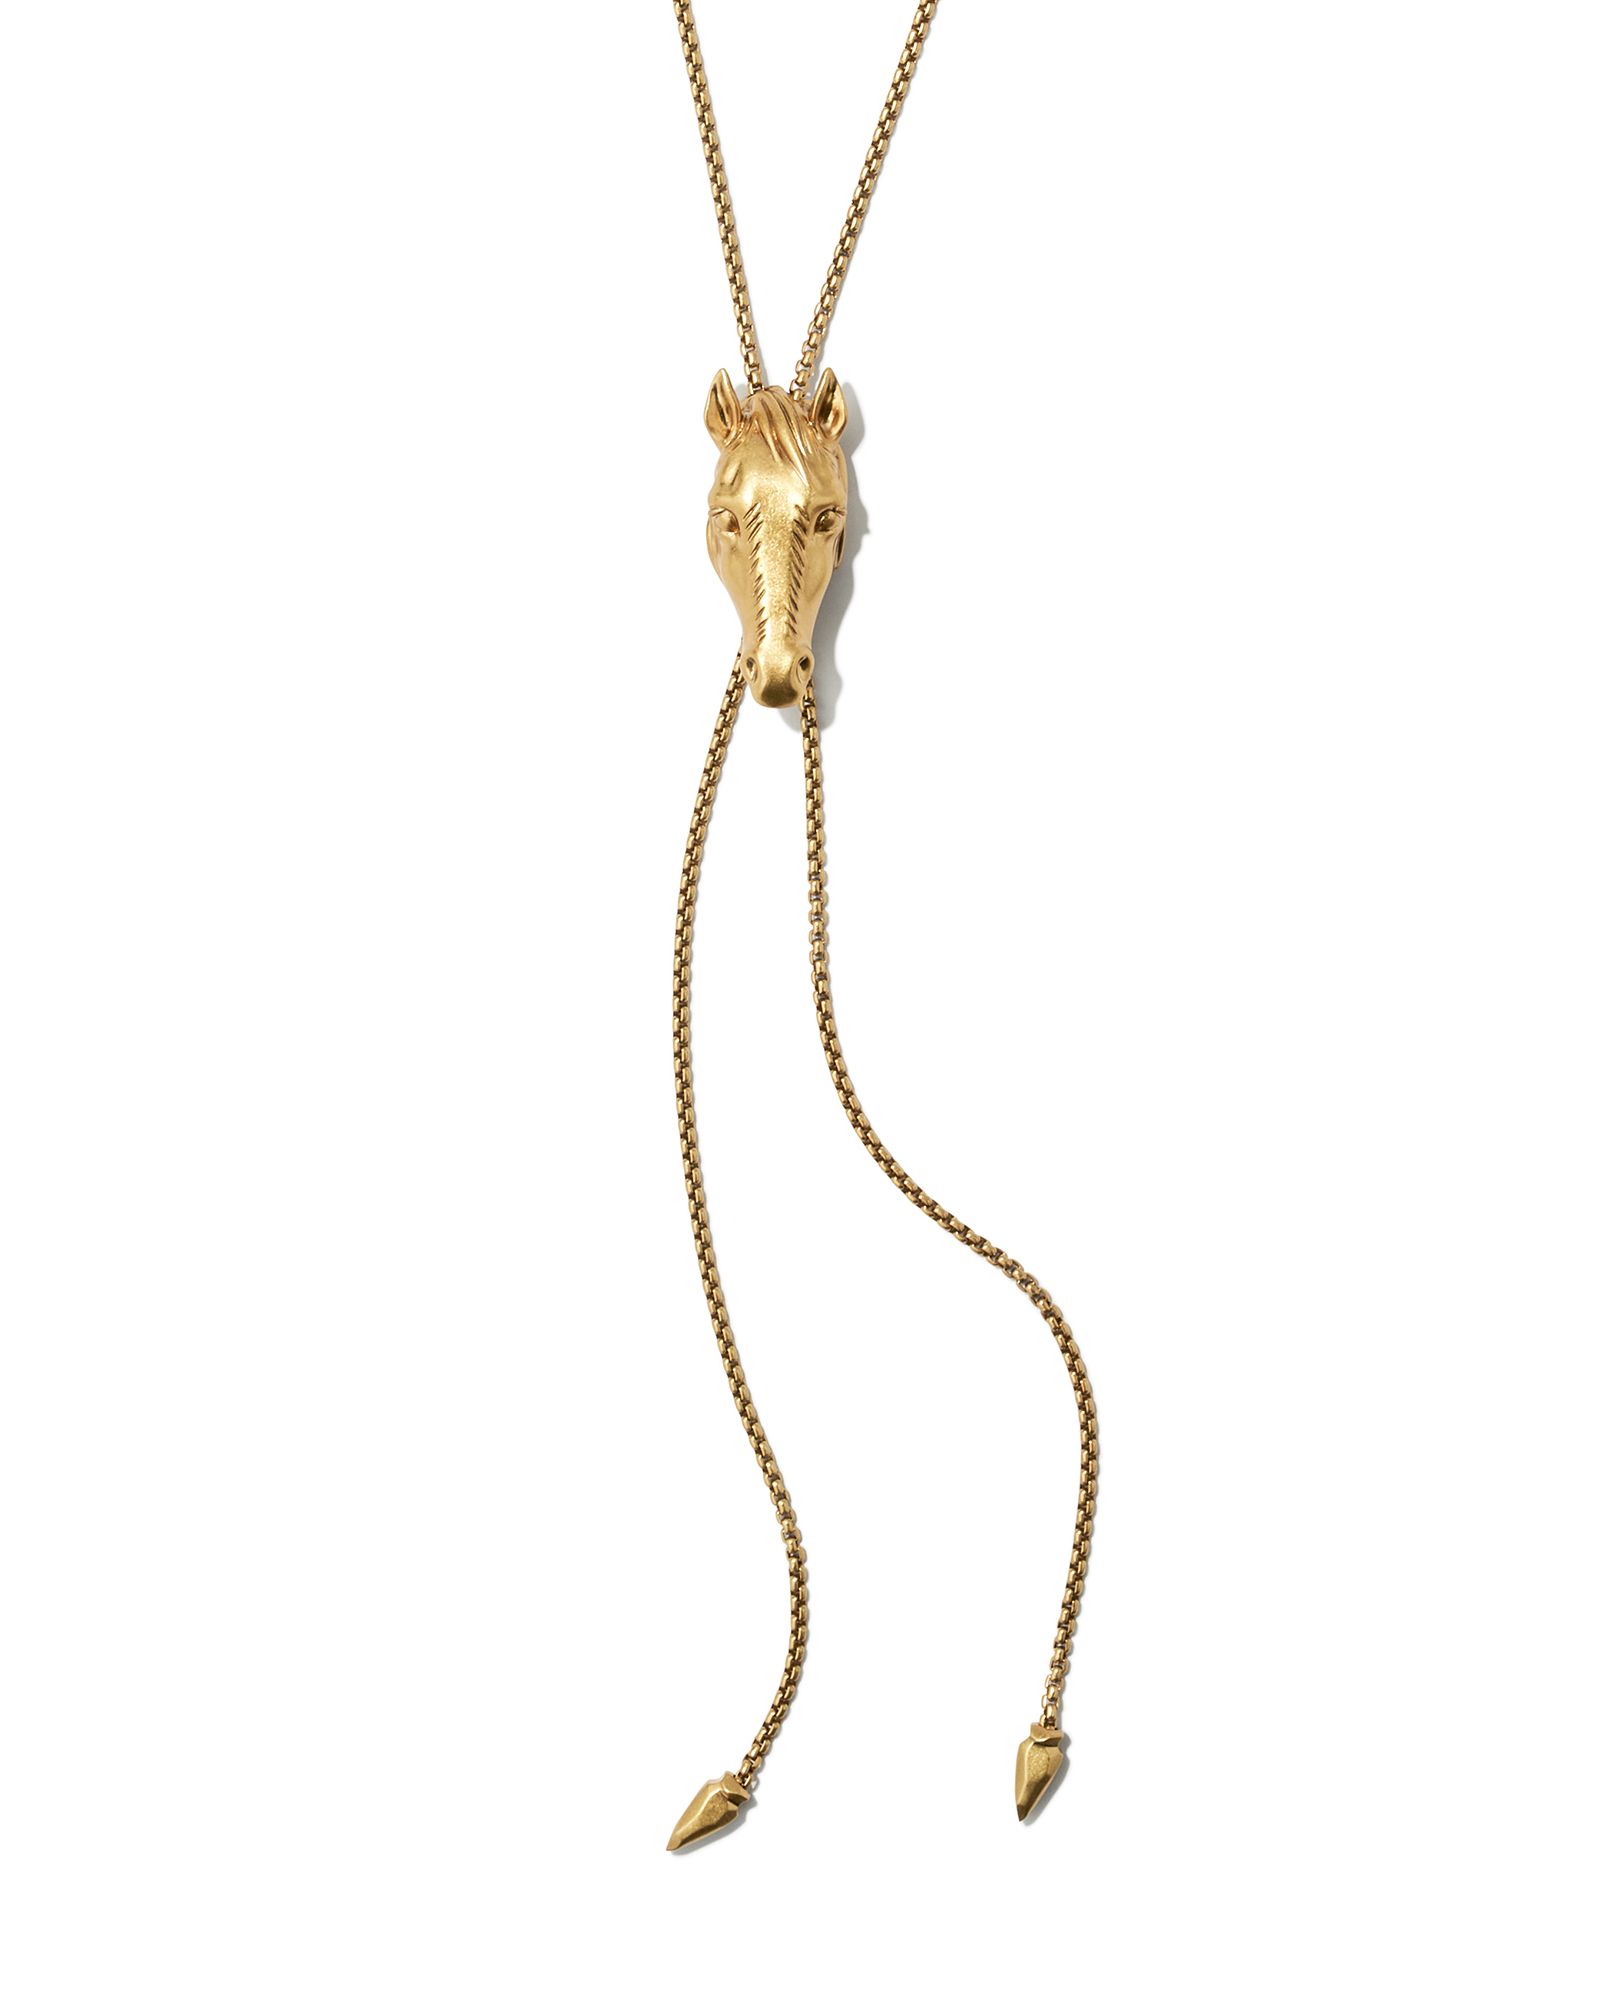 Beau Bolo Necklace in Vintage Gold | Kendra Scott | Kendra Scott